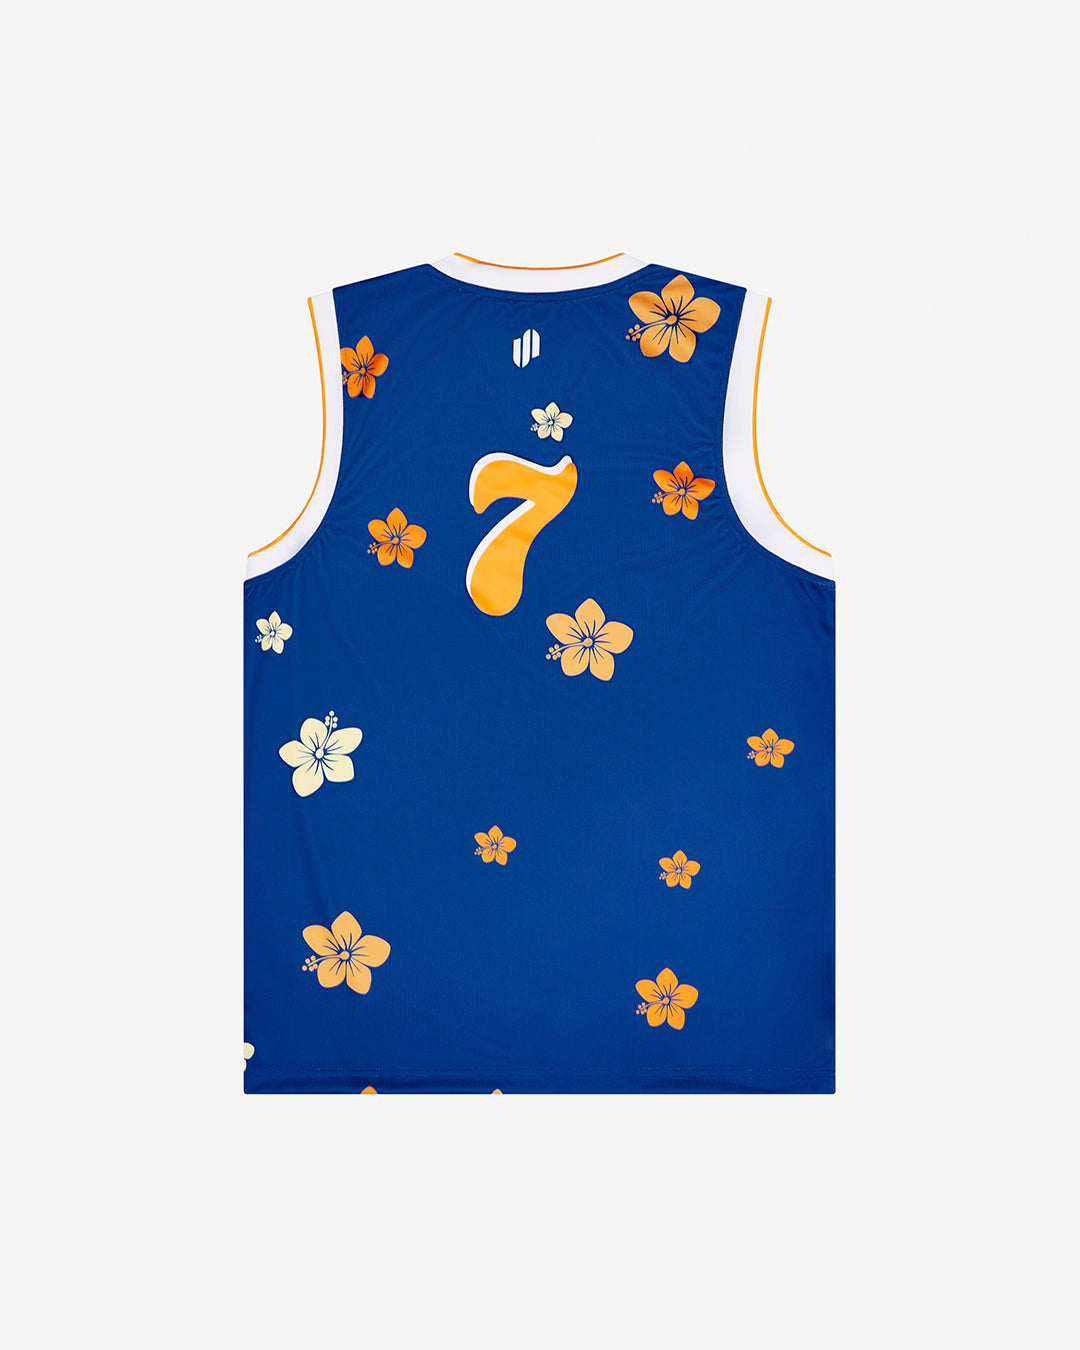 ED7:95 - Floral Basketball Singlet - Floral Blue